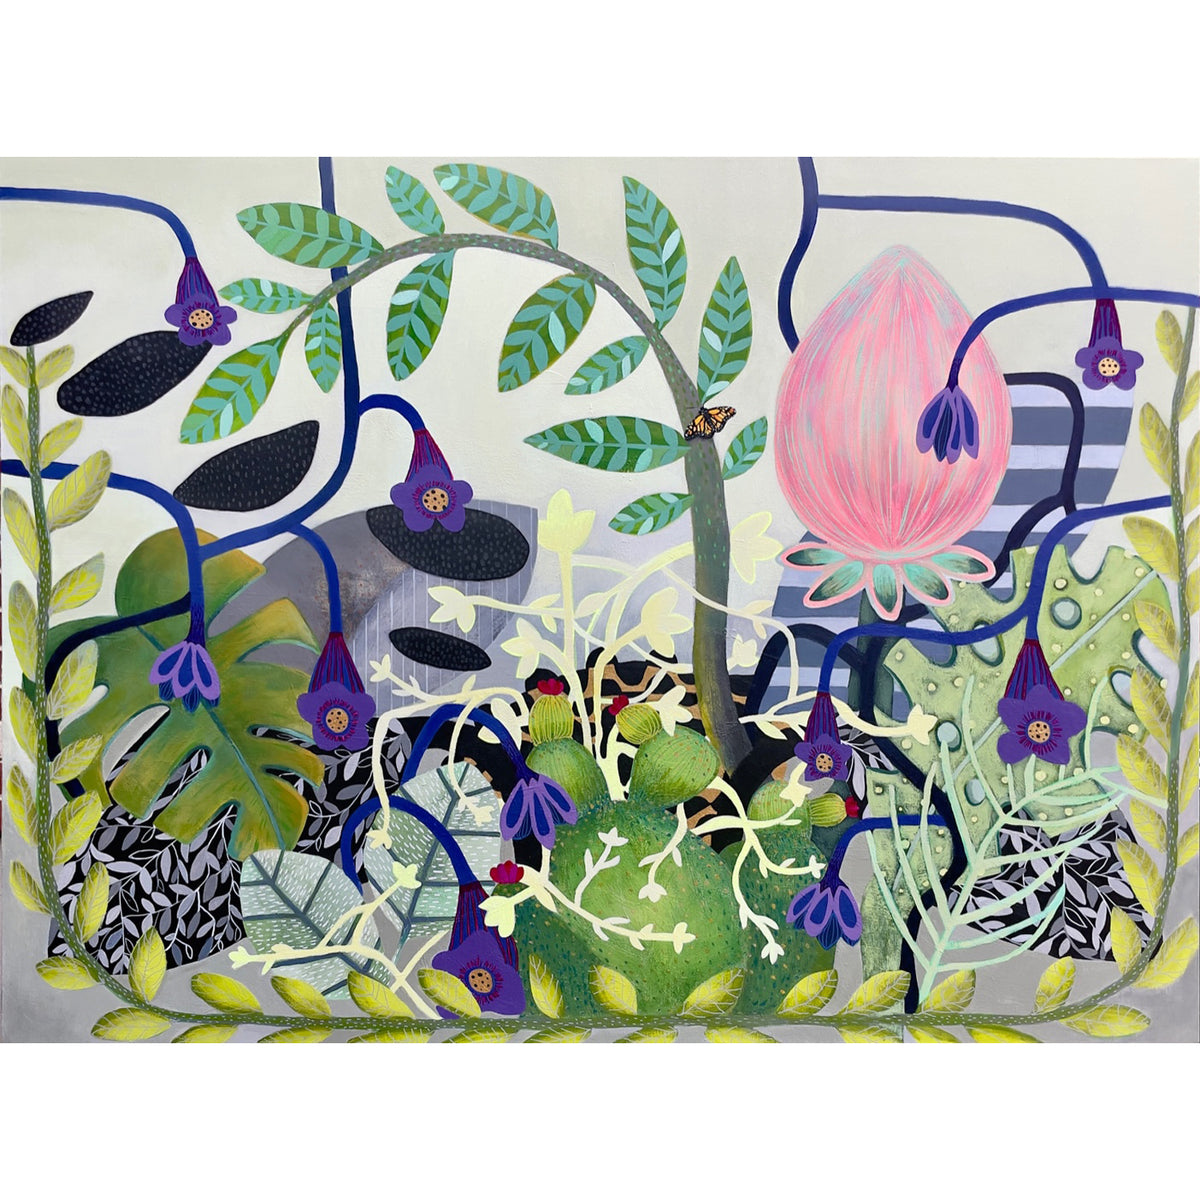 Tamara Soto - Magic Garden, 16" x 20"